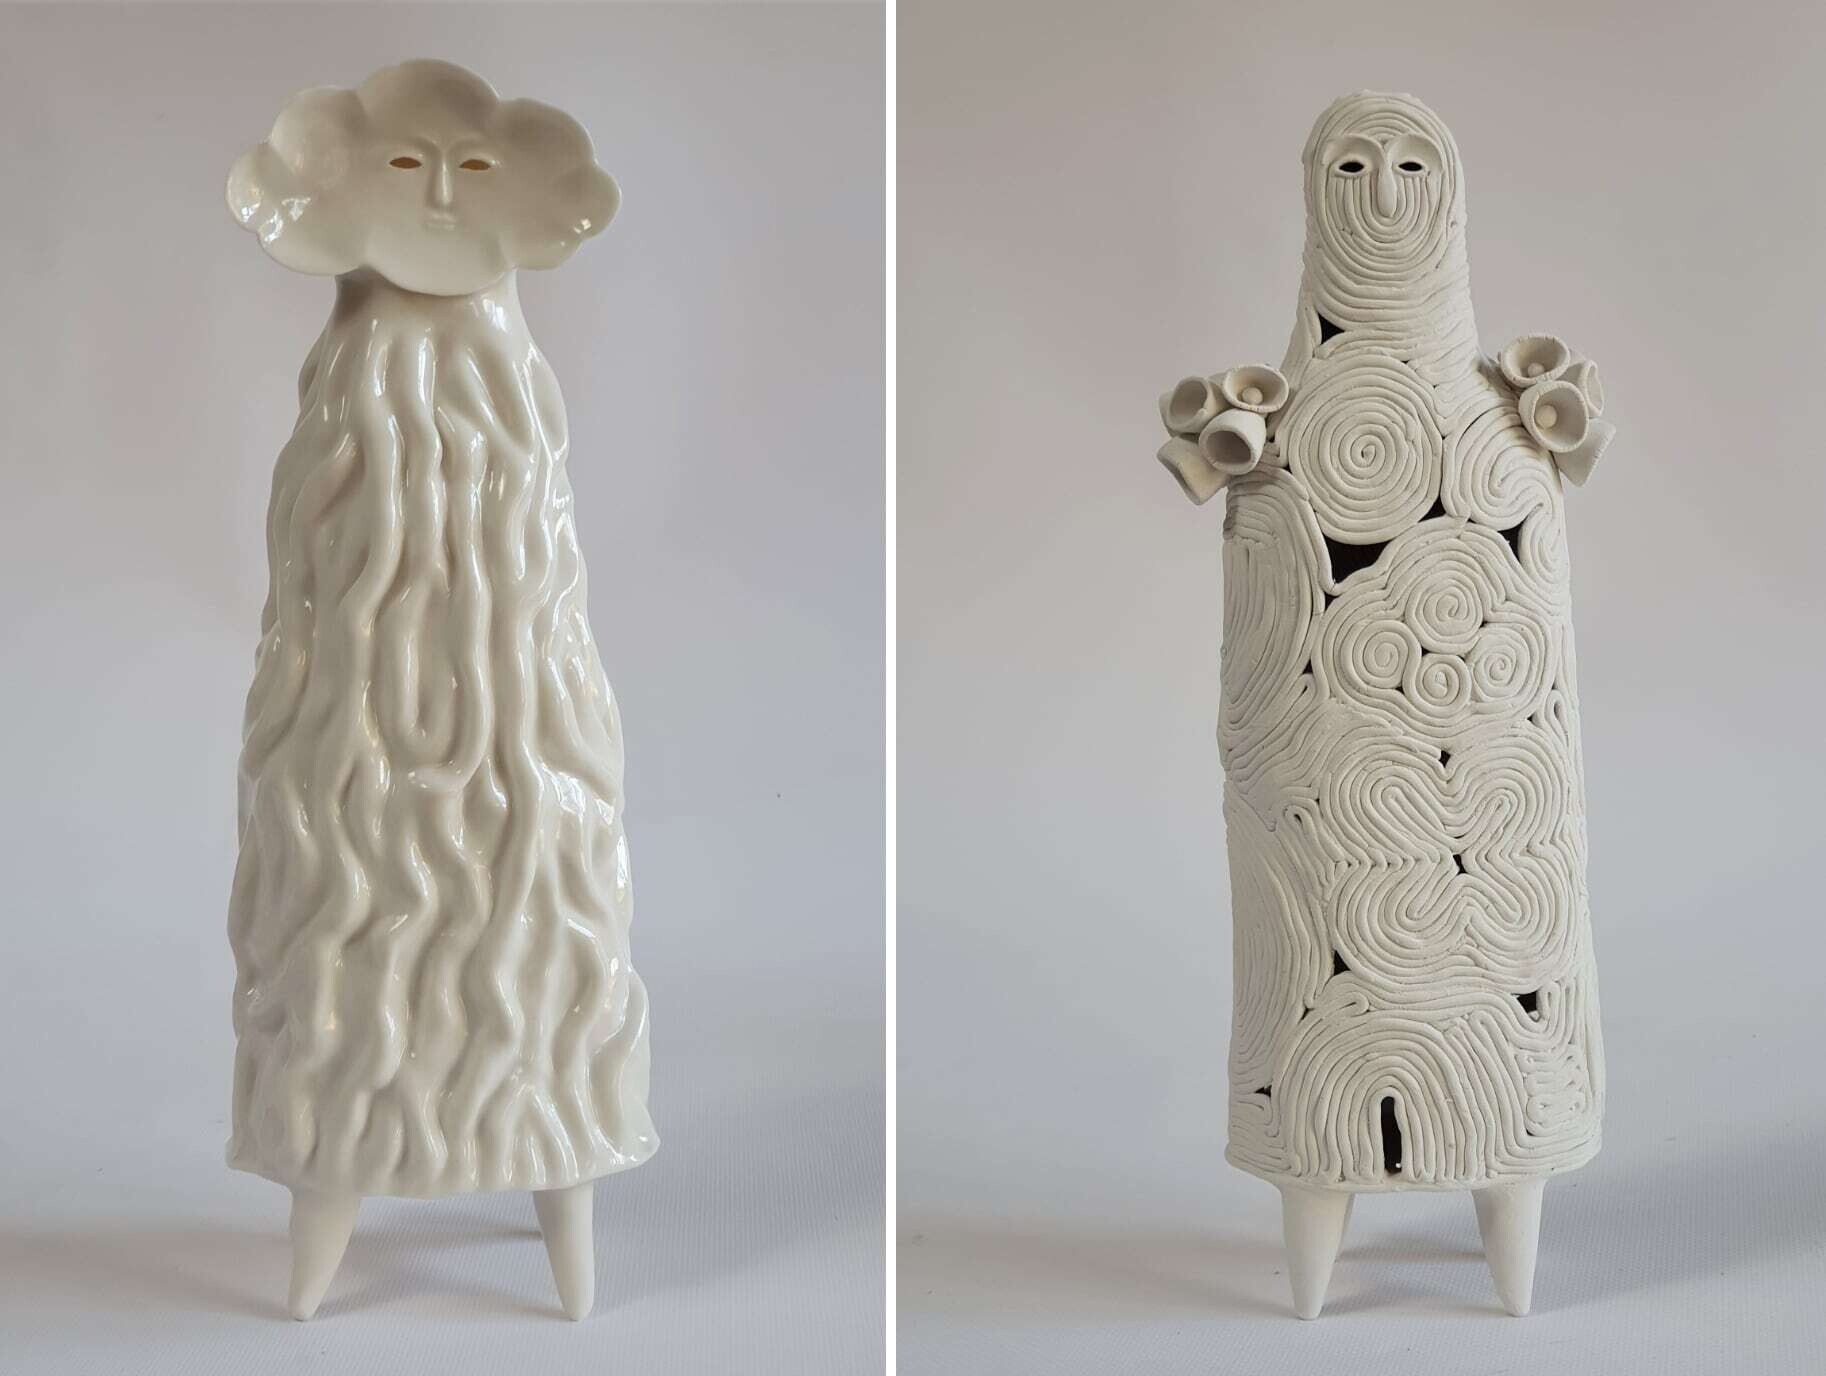 sophie woodrow figuras ceramica ejercito inquietante raro seres diminutos 4